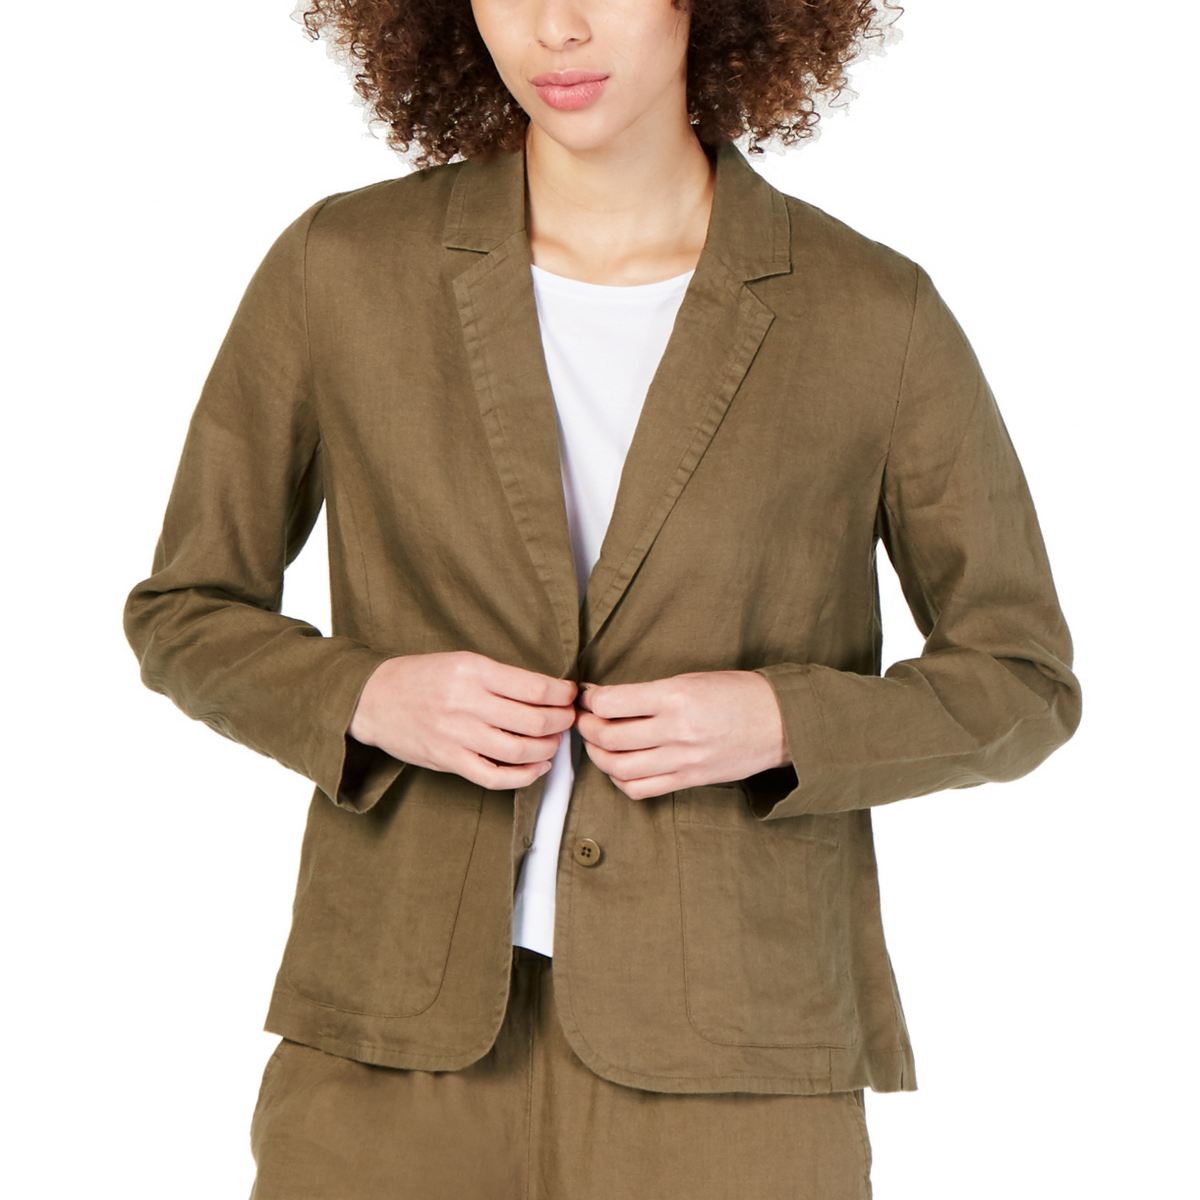 EILEEN FISHER Women's Olive Green Organic Linen Unlined Blazer Jacket